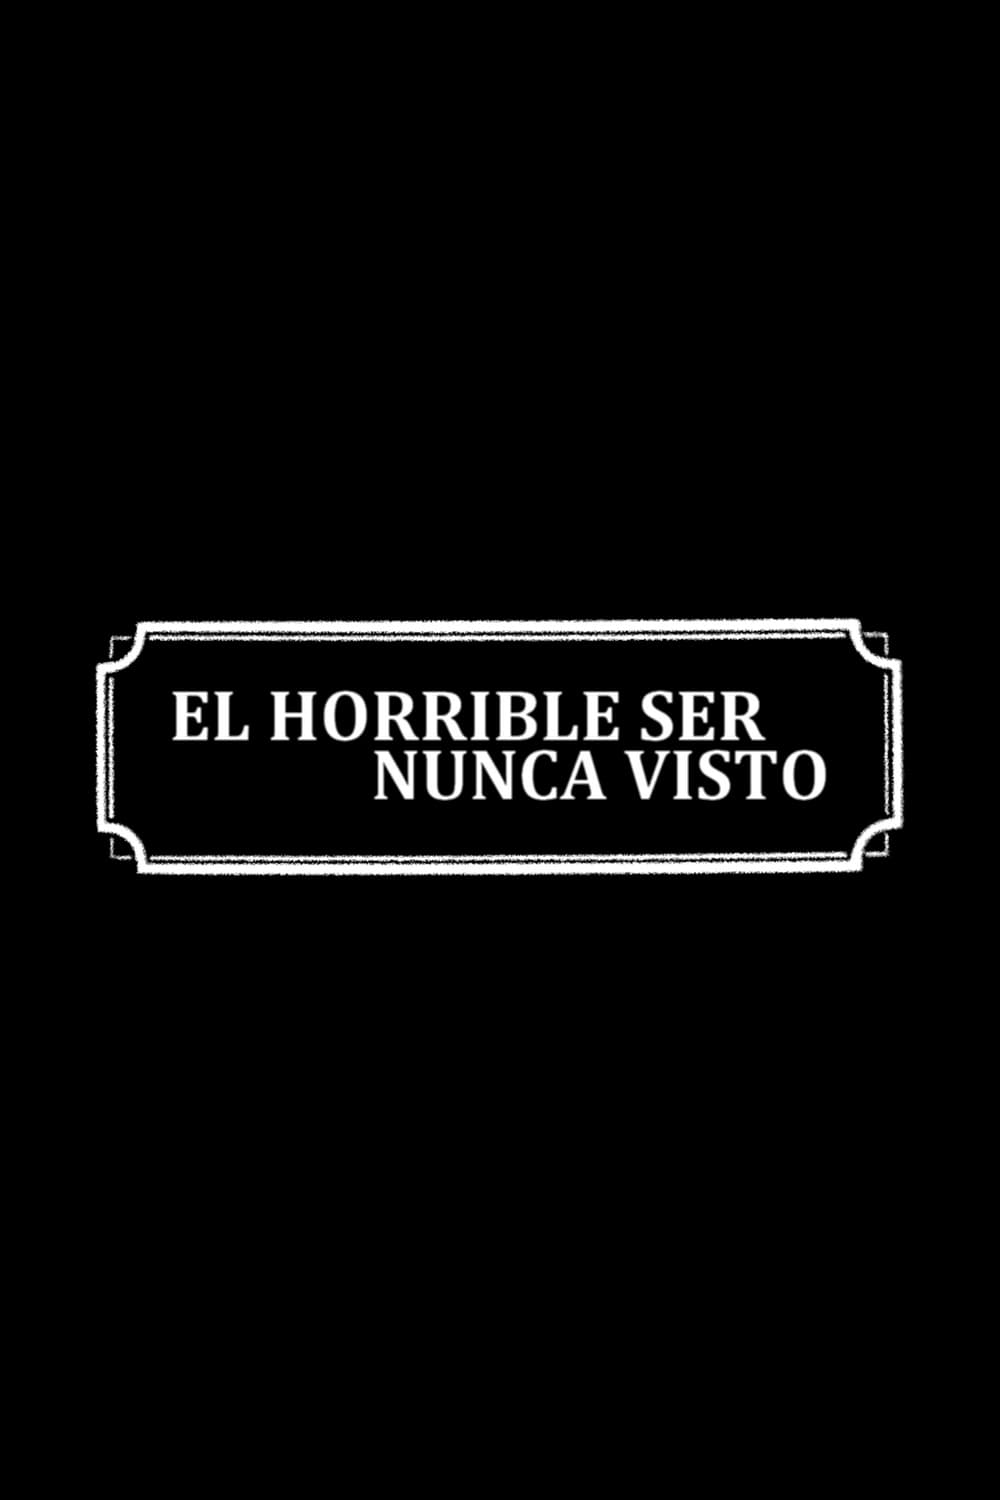 El horrible ser nunca visto (1966)